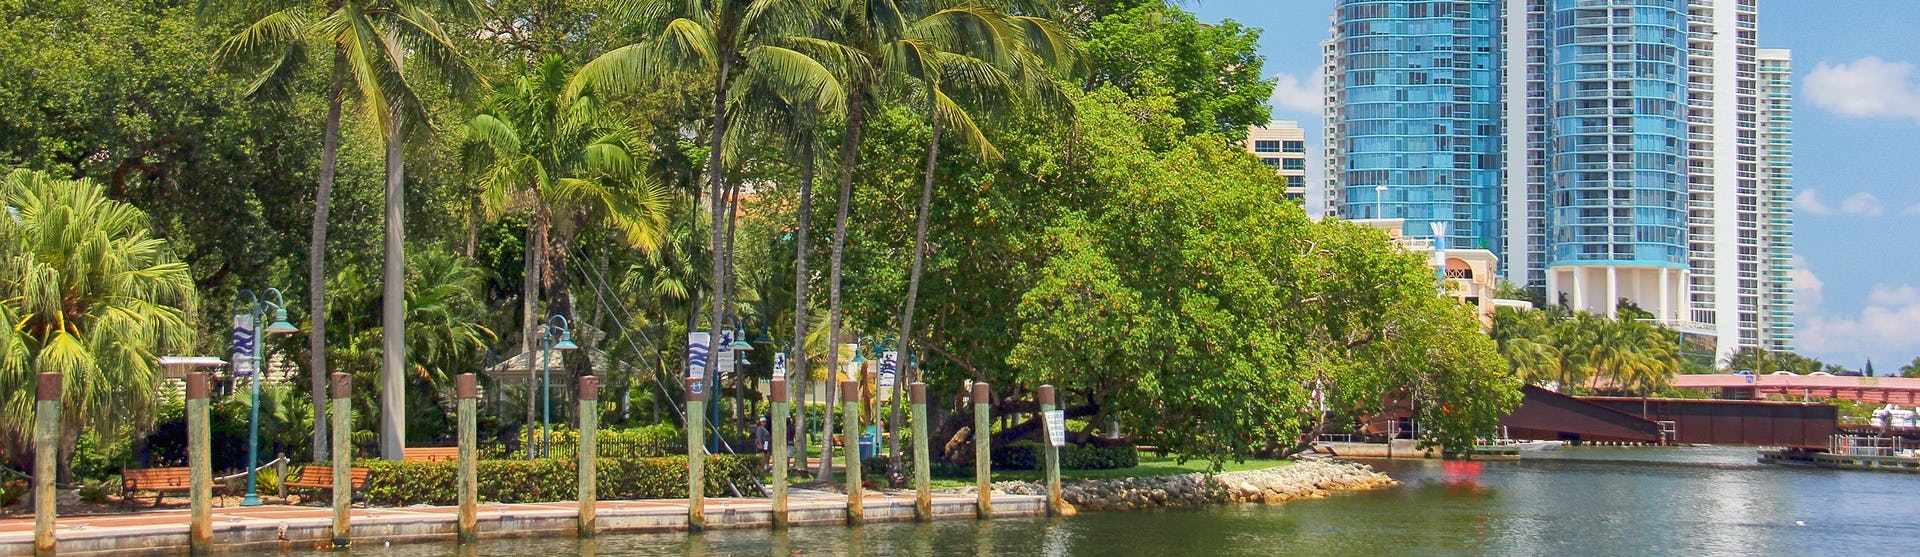 Fort Lauderdale med havet i nedkant, palmer och ett vitt och blått höghus till höger i bild.